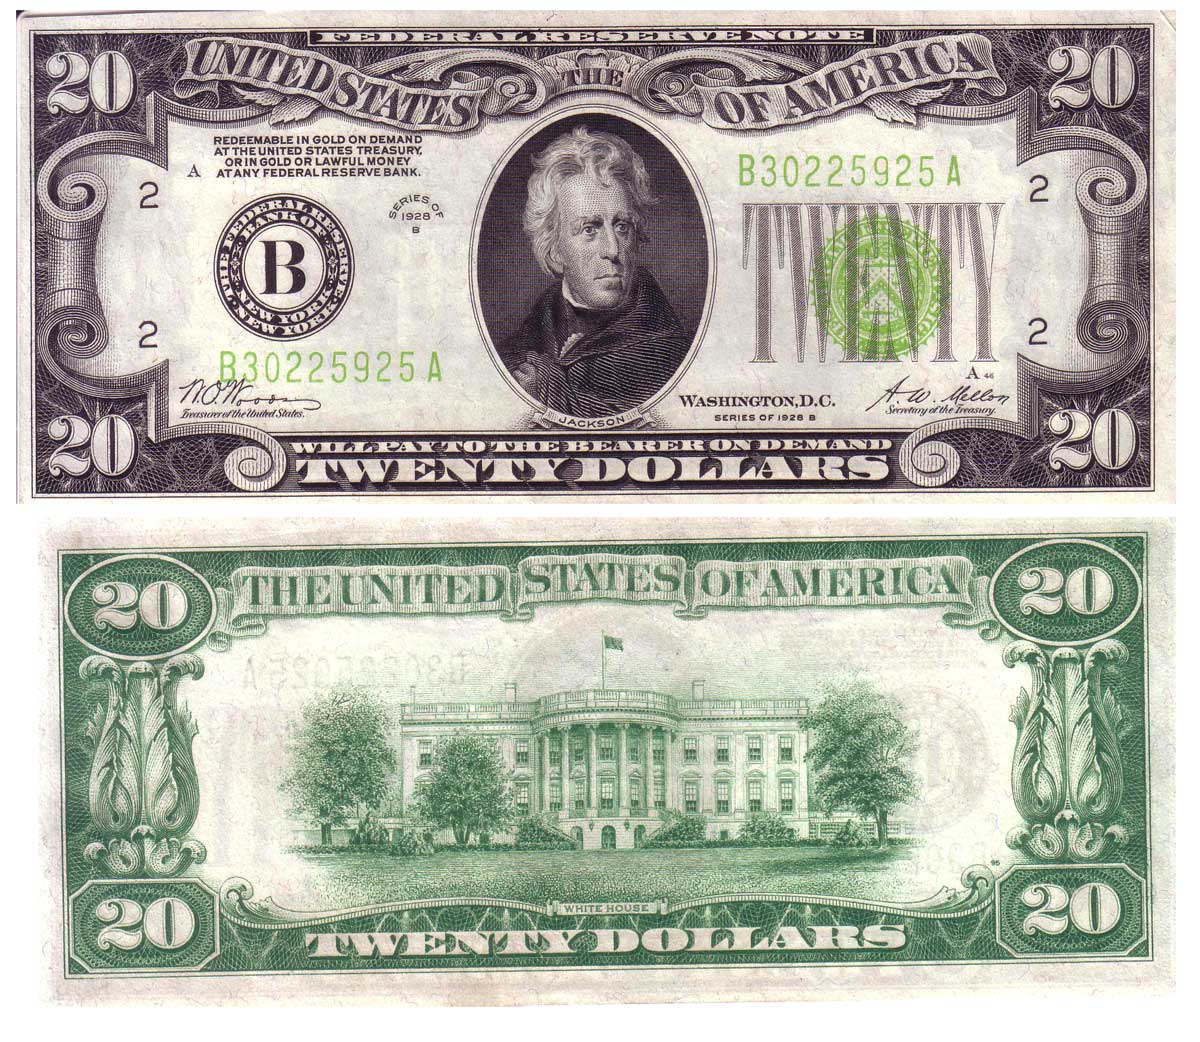 1934 $5 dollar bill serial number lookup